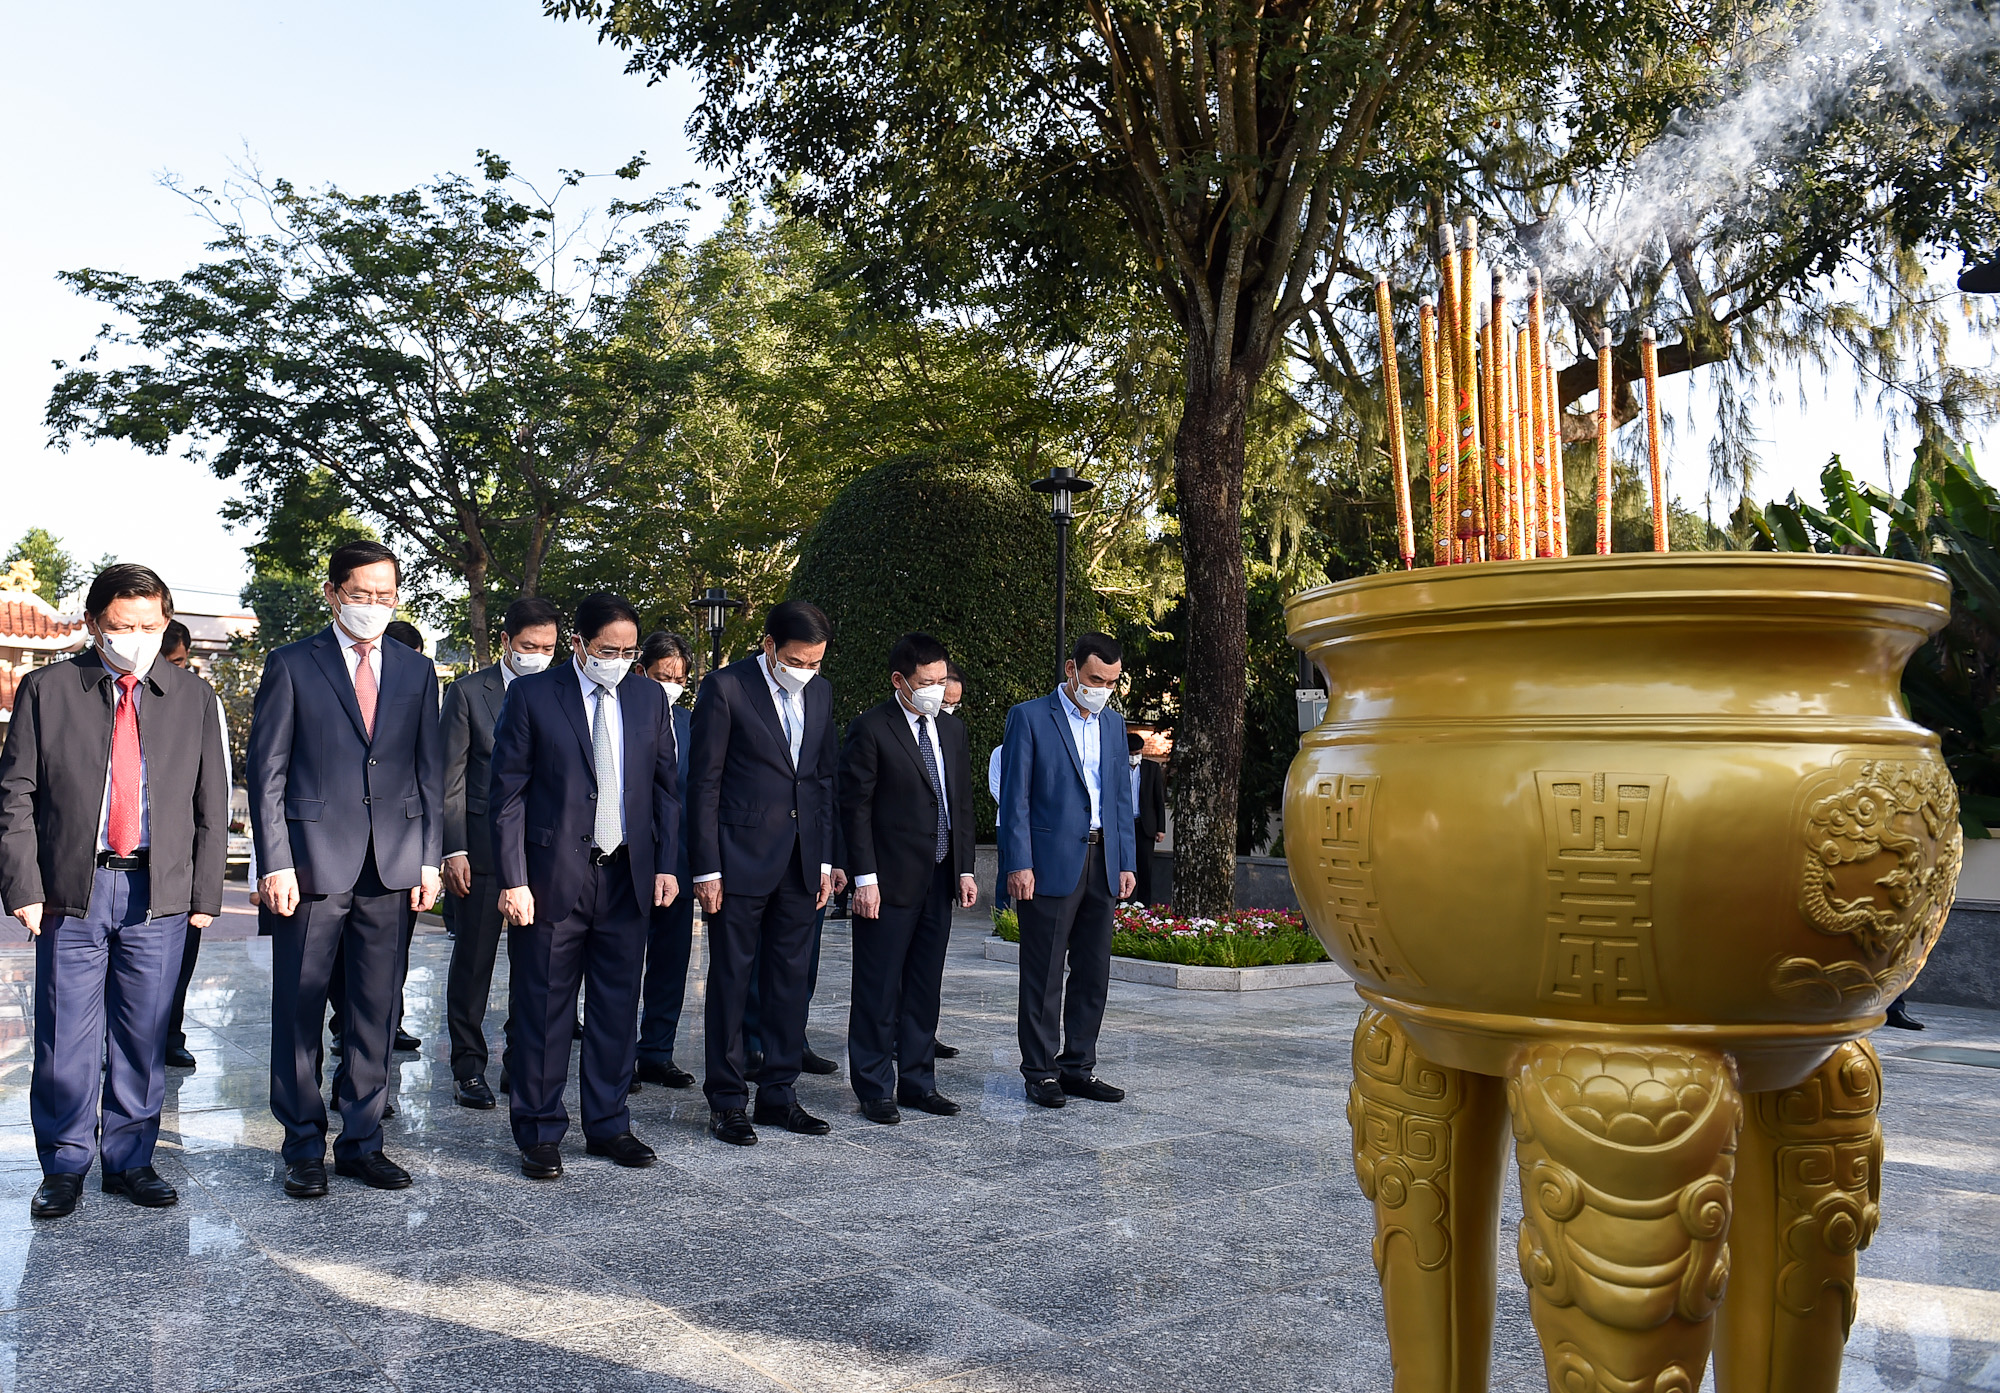 Chùm ảnh: Thủ tướng Phạm Minh Chính dự lễ kỷ niệm 30 năm thành lập tỉnh Bà Rịa-Vũng Tàu